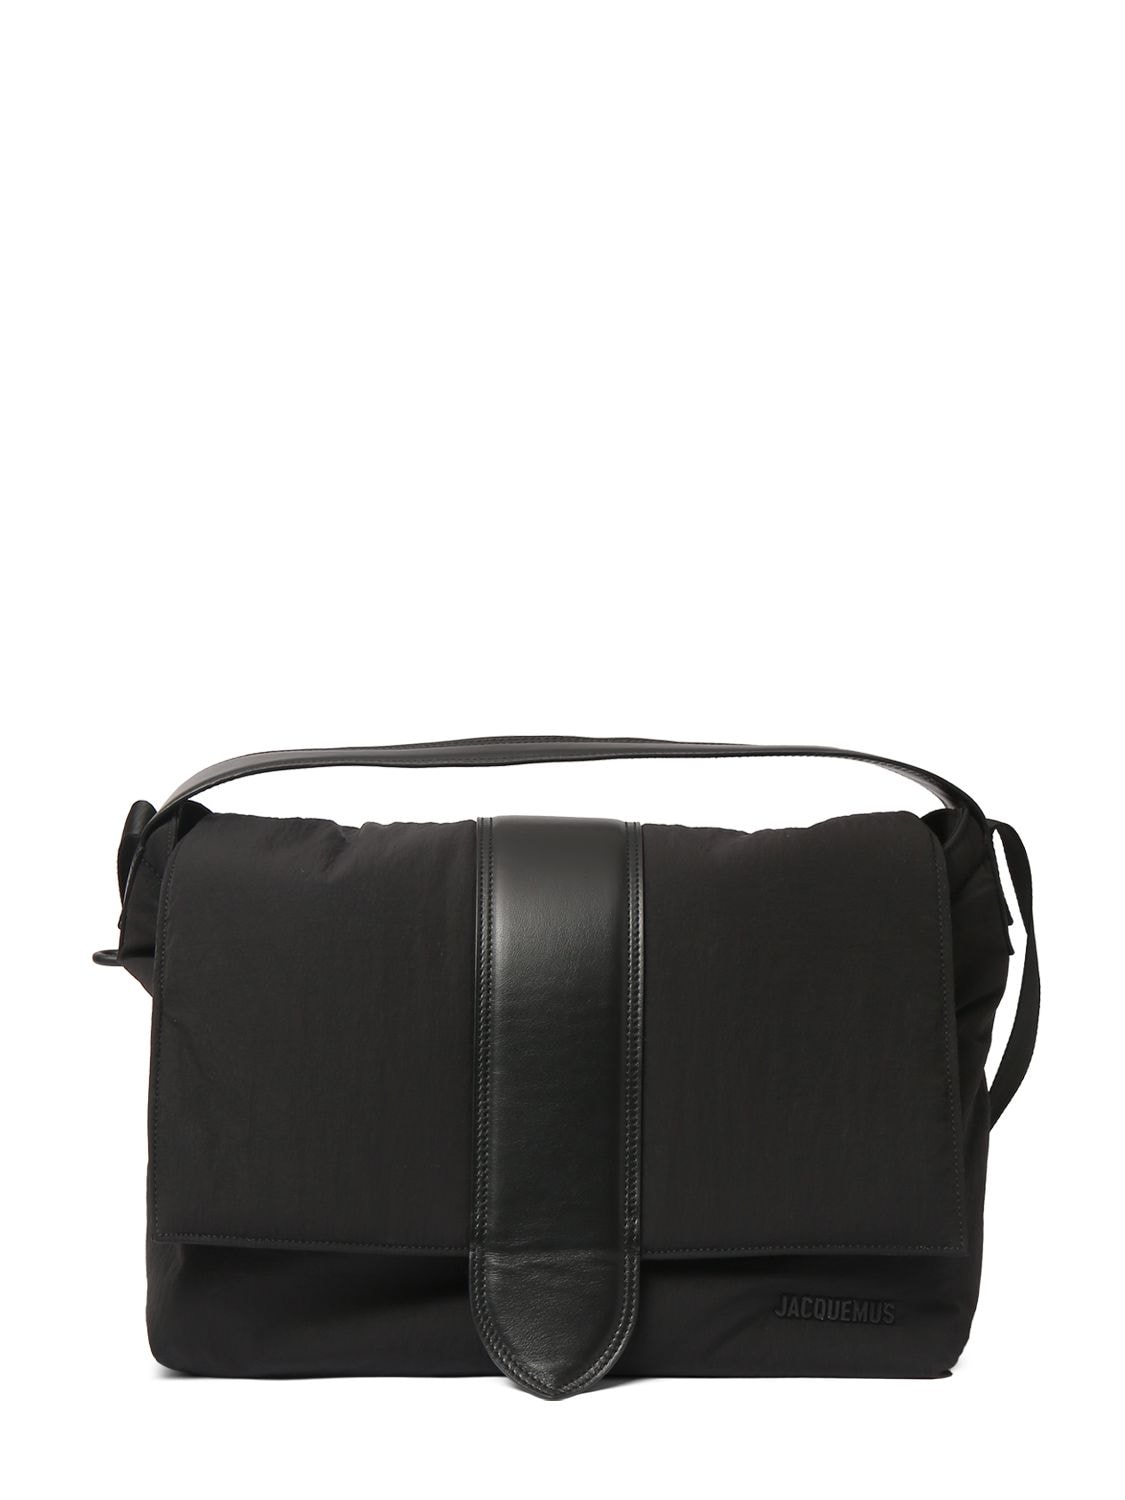 Jacquemus Le Petit Messenger Nylon Bag In Black